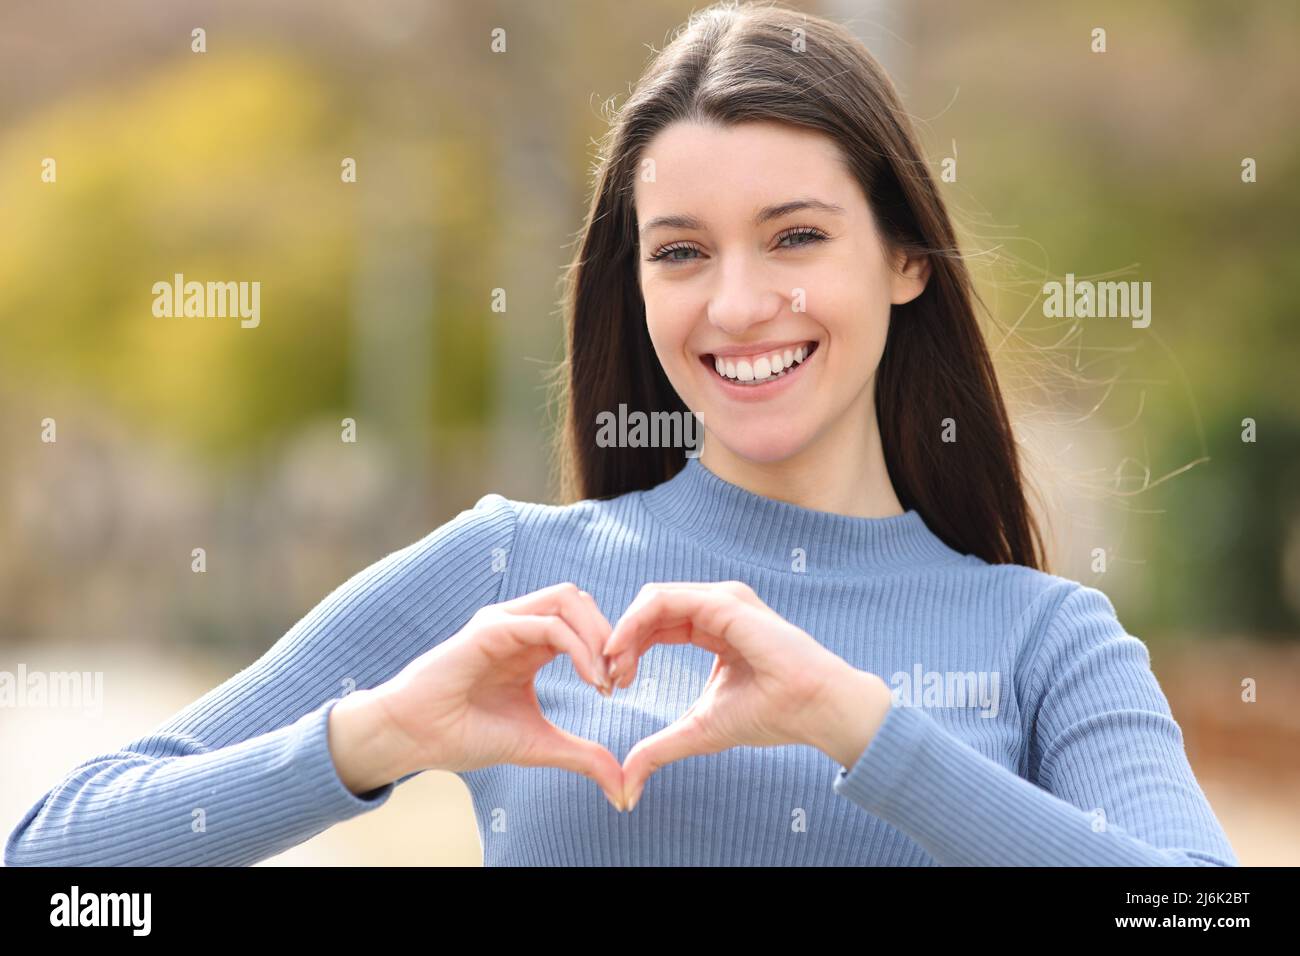 Vorderansicht Porträt einer glücklichen Teenagerin, die mit ihren Händen in einem Park herzförmig macht Stockfoto